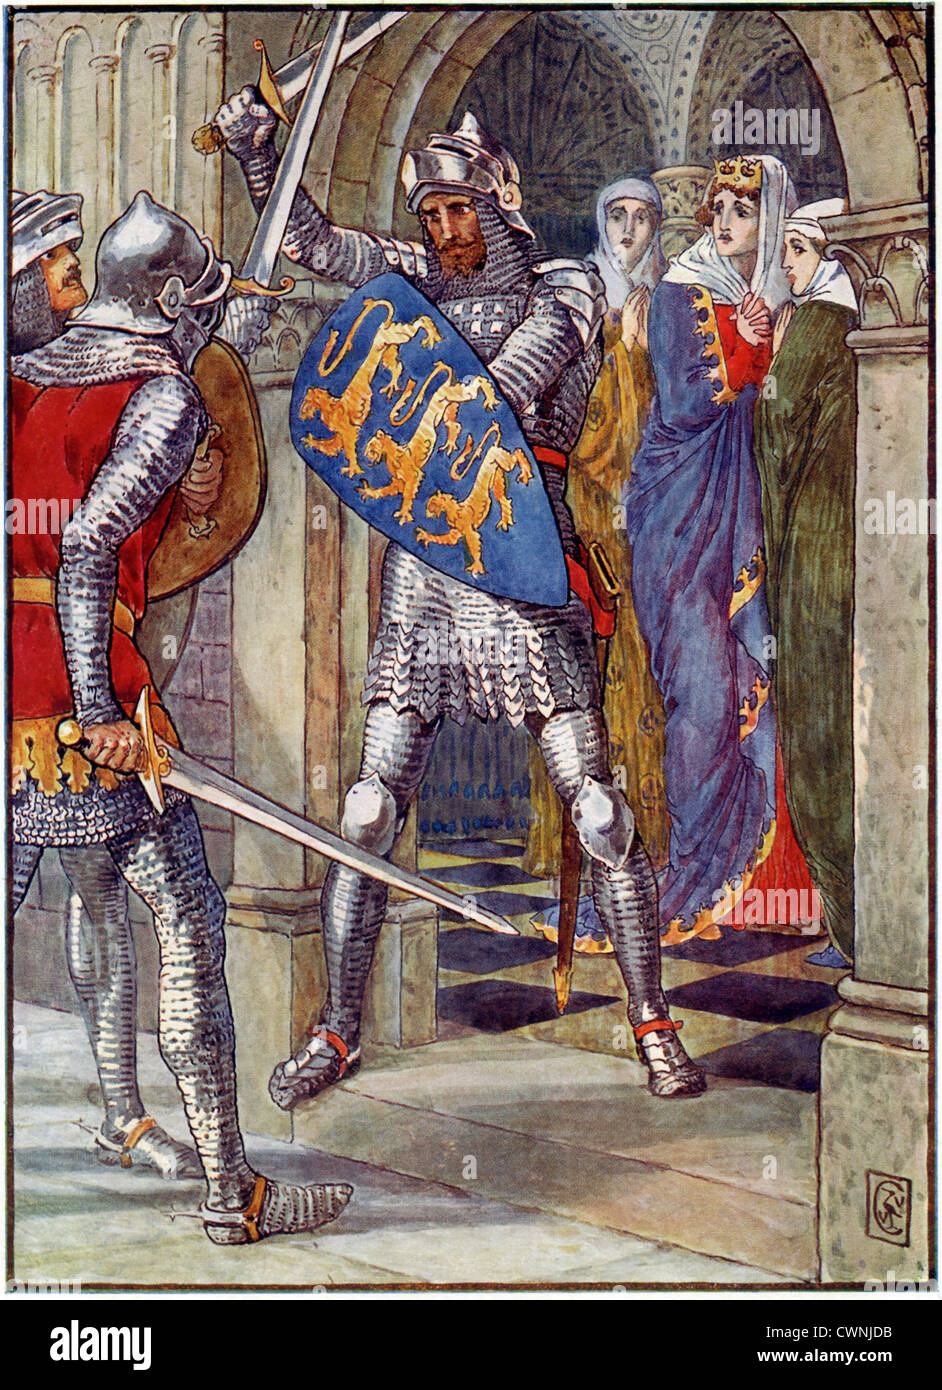 Sir Lancelot sauve la reine Guenièvre de Mador qui ont accusé la reine de trahison dans la mort de son frère par pomme empoisonnée. Banque D'Images